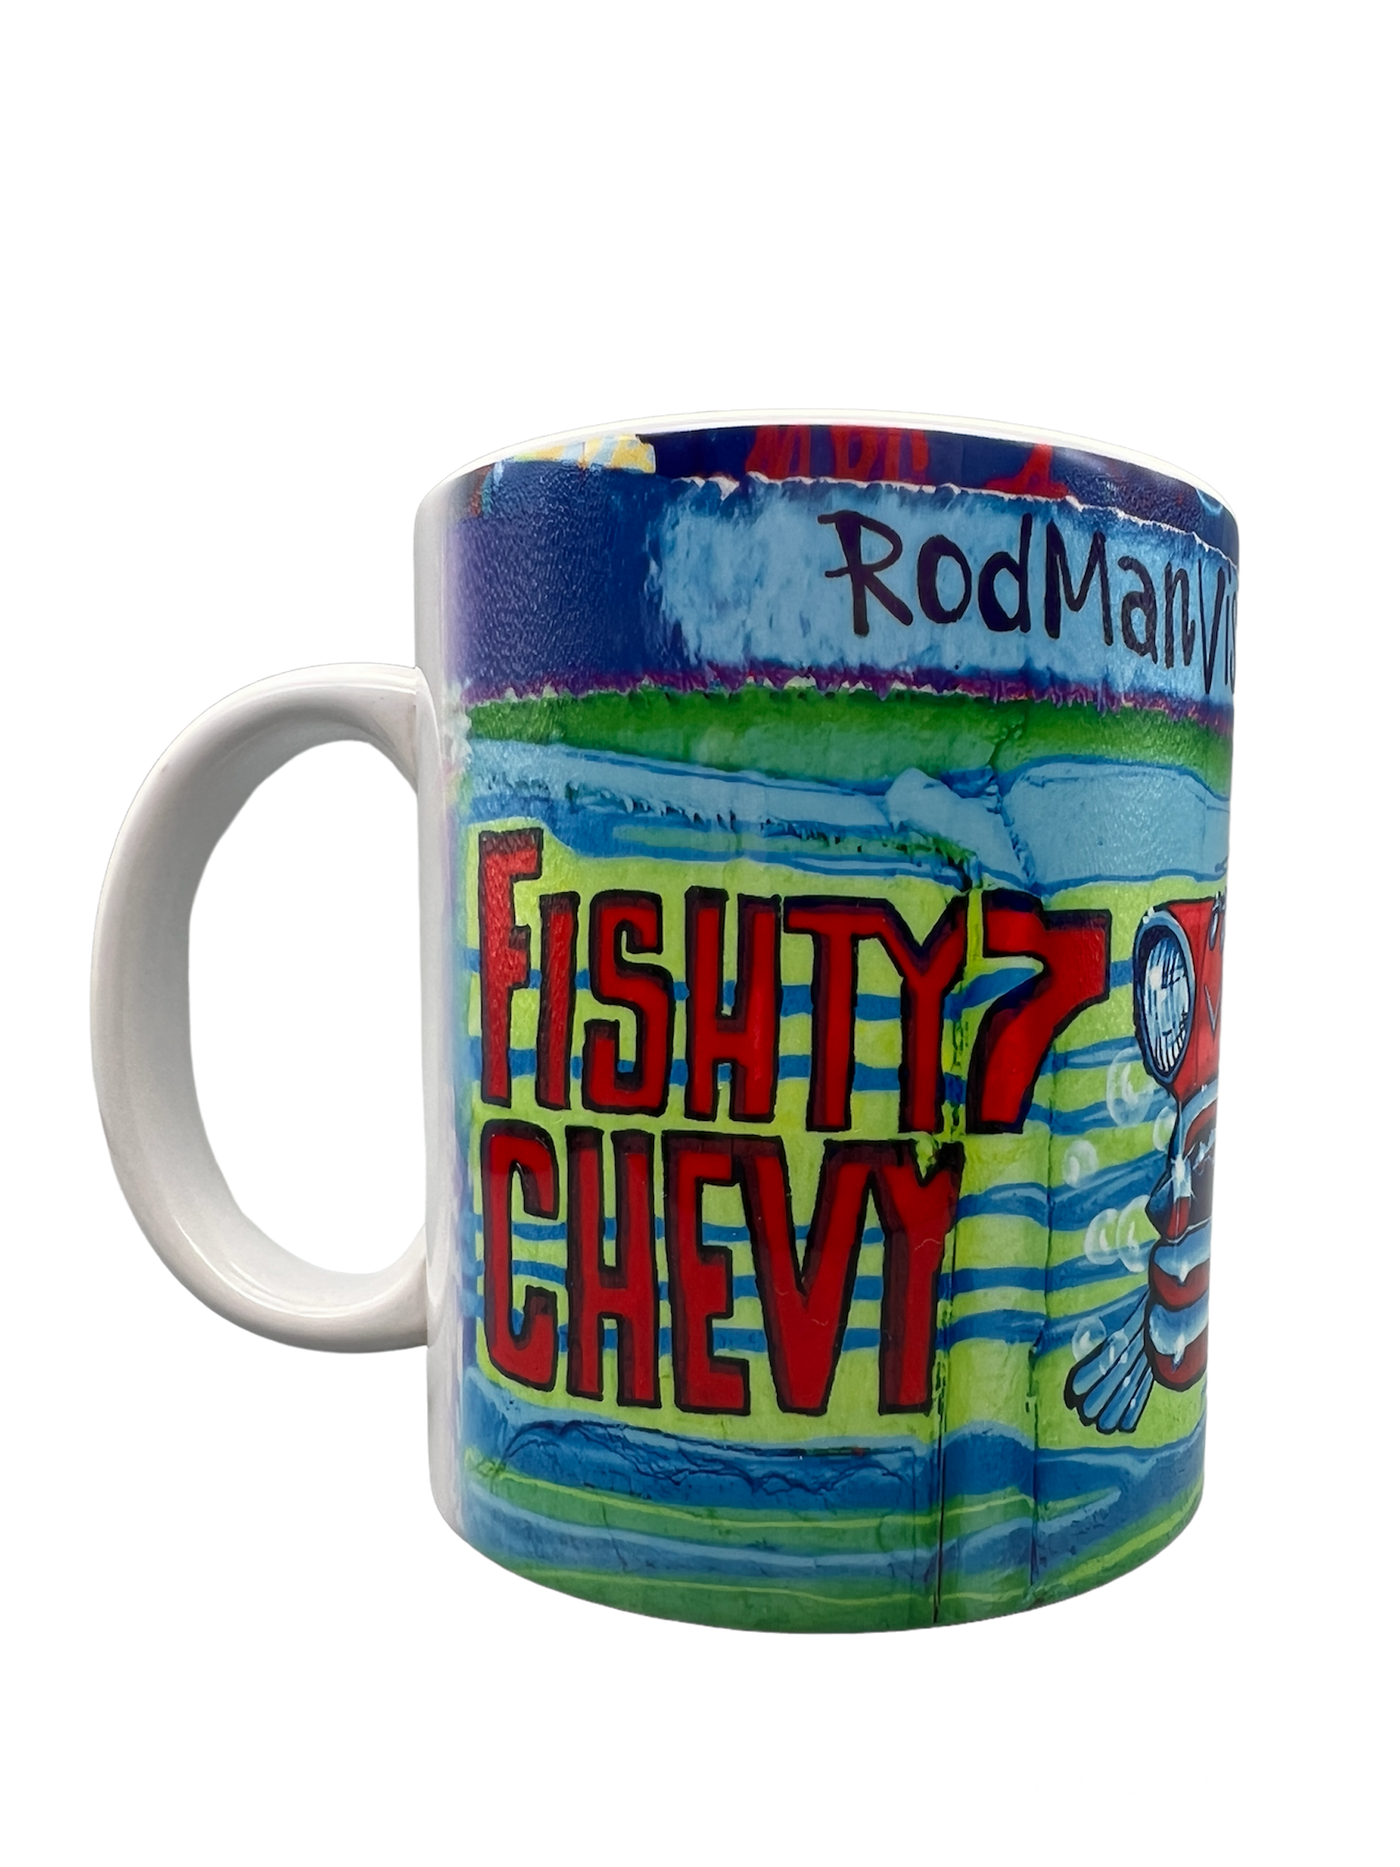 Fishty7 Chevy - Mug